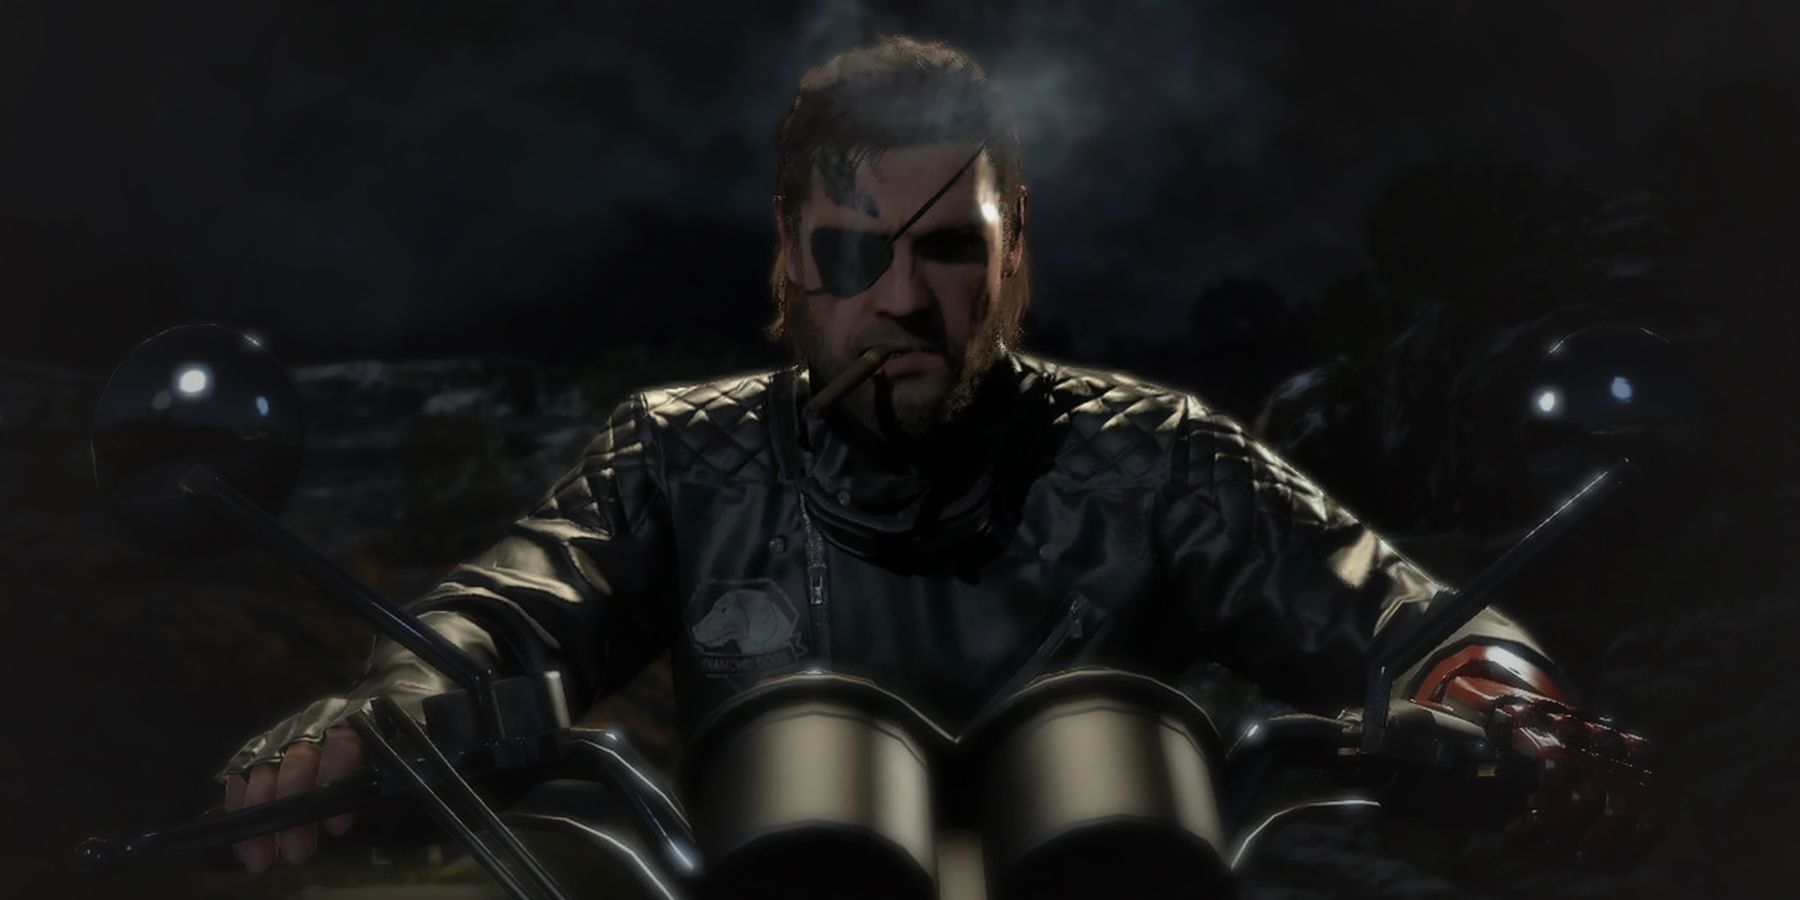 Metal Gear Solid 5 Phantom Pain Venom Snake on motorcycle